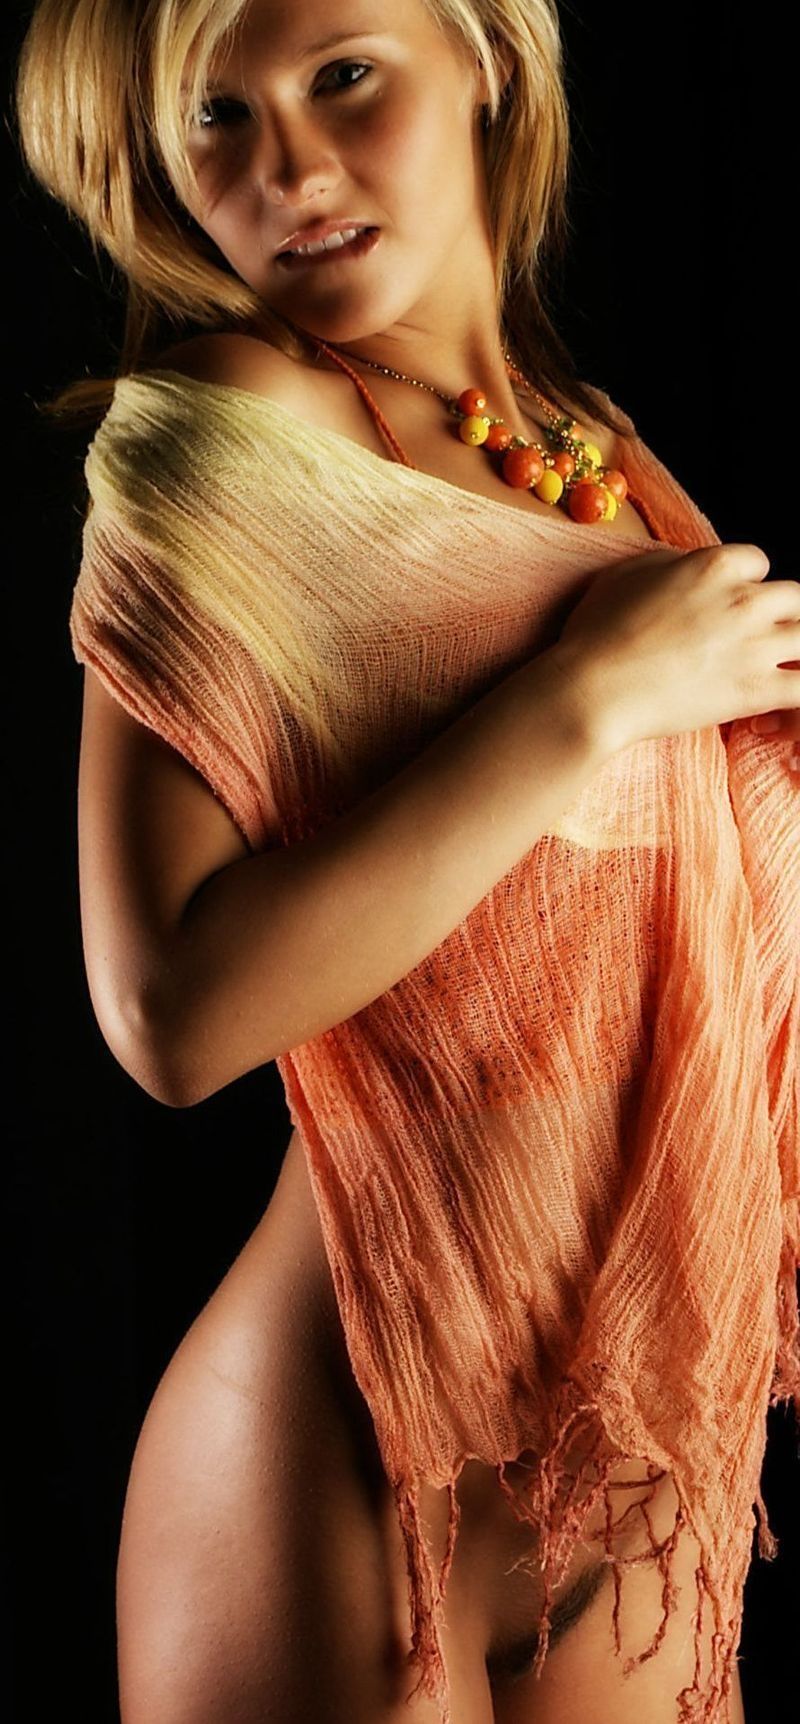 young blonde girl wearing orange knit shirt